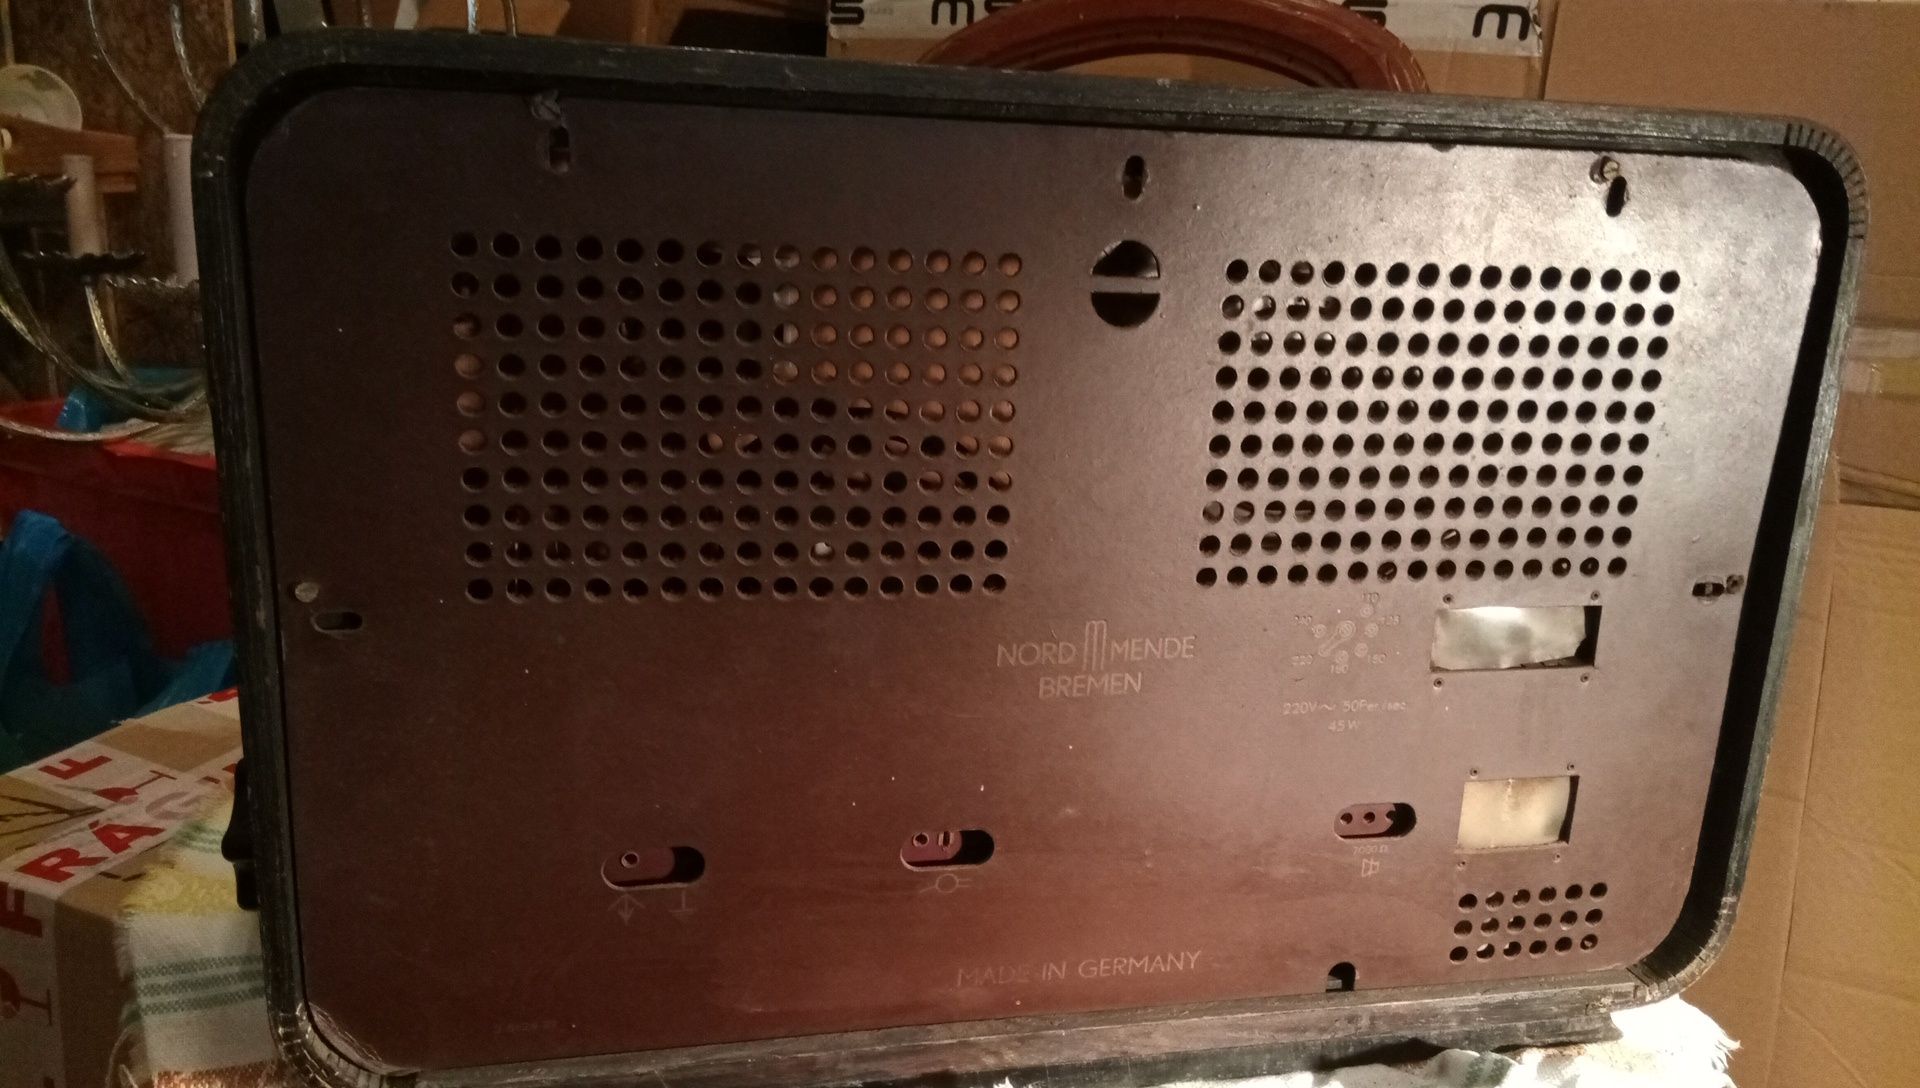 Rádio antigo e raro a válvulas nordmend BREMEN - 187 WU